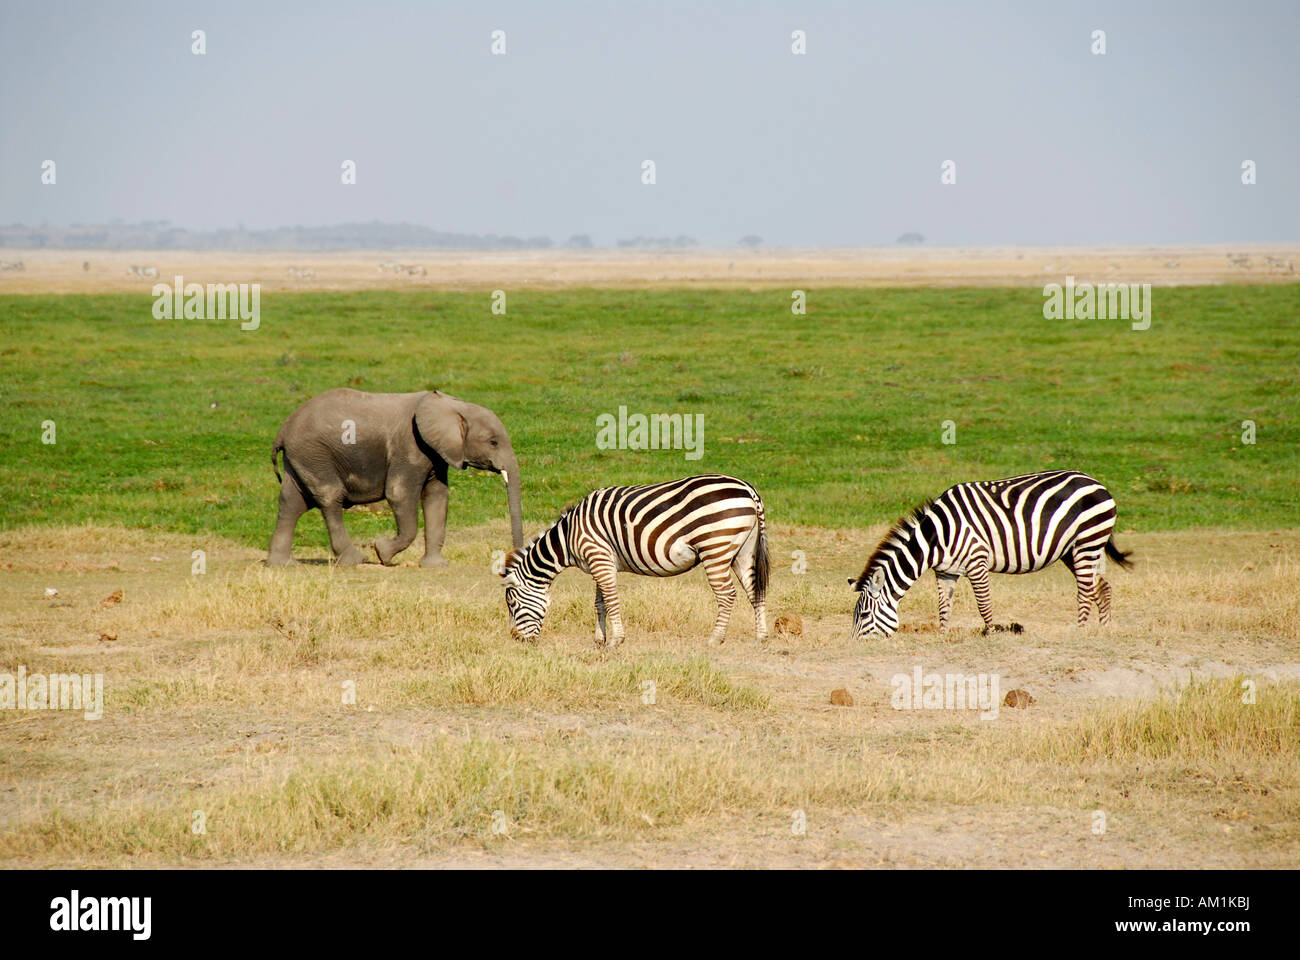 Petit éléphant avec deux zèbres Parc national Amboseli au Kenya Banque D'Images